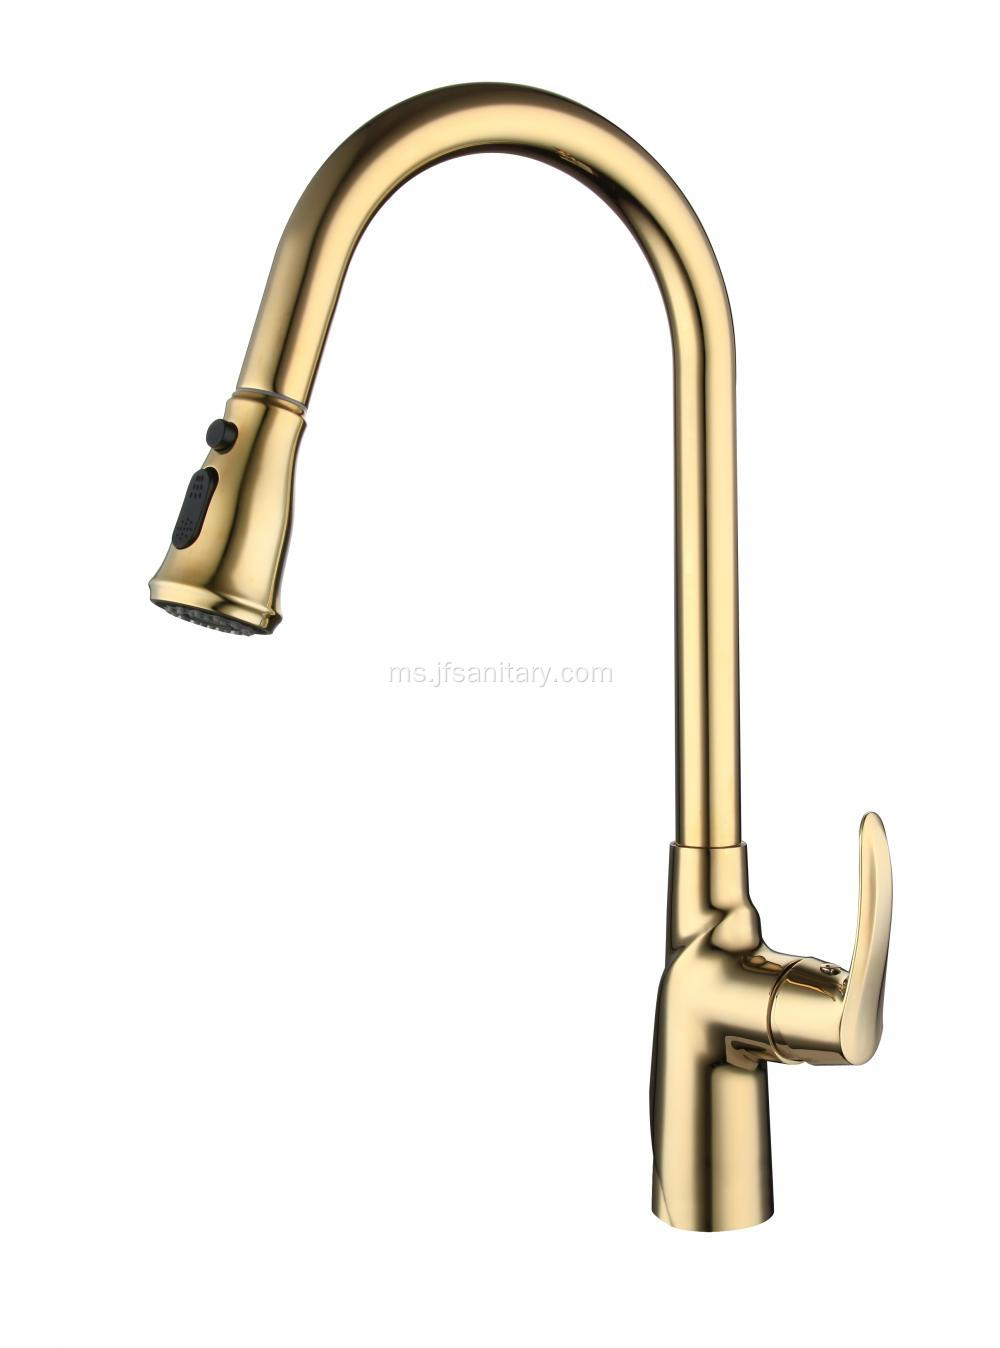 Gold Brass menarik ke bawah faucets dapur untuk tenggelam